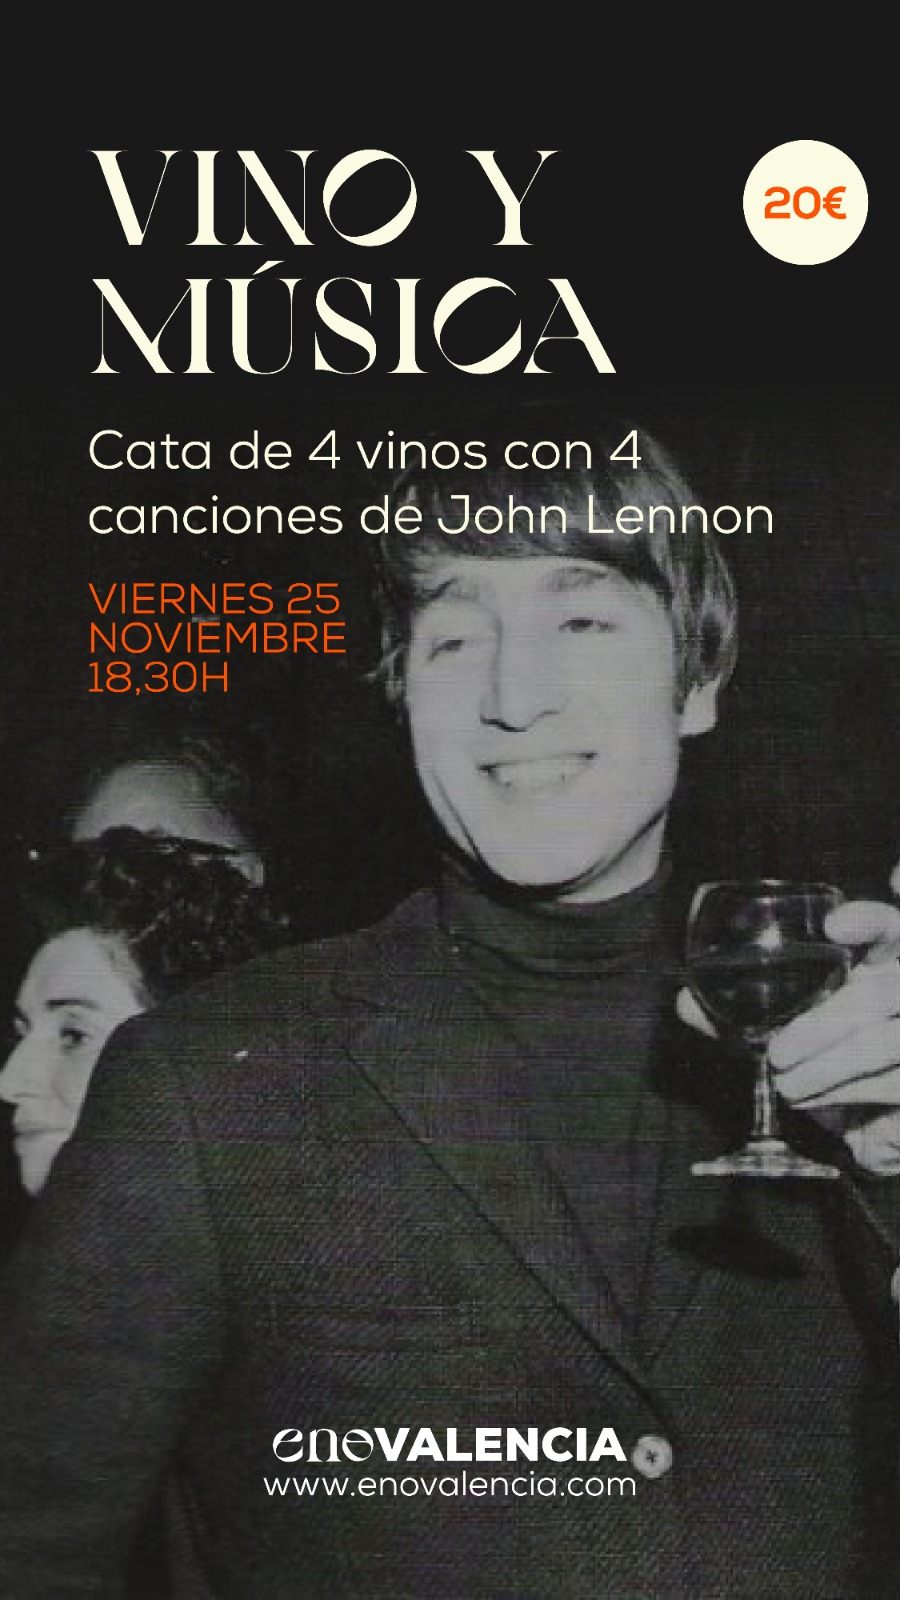 Vino y música 4 Vinos con 4 Canciones de John Lennon EnoValencia - Cata, eventos y venta de vino 9